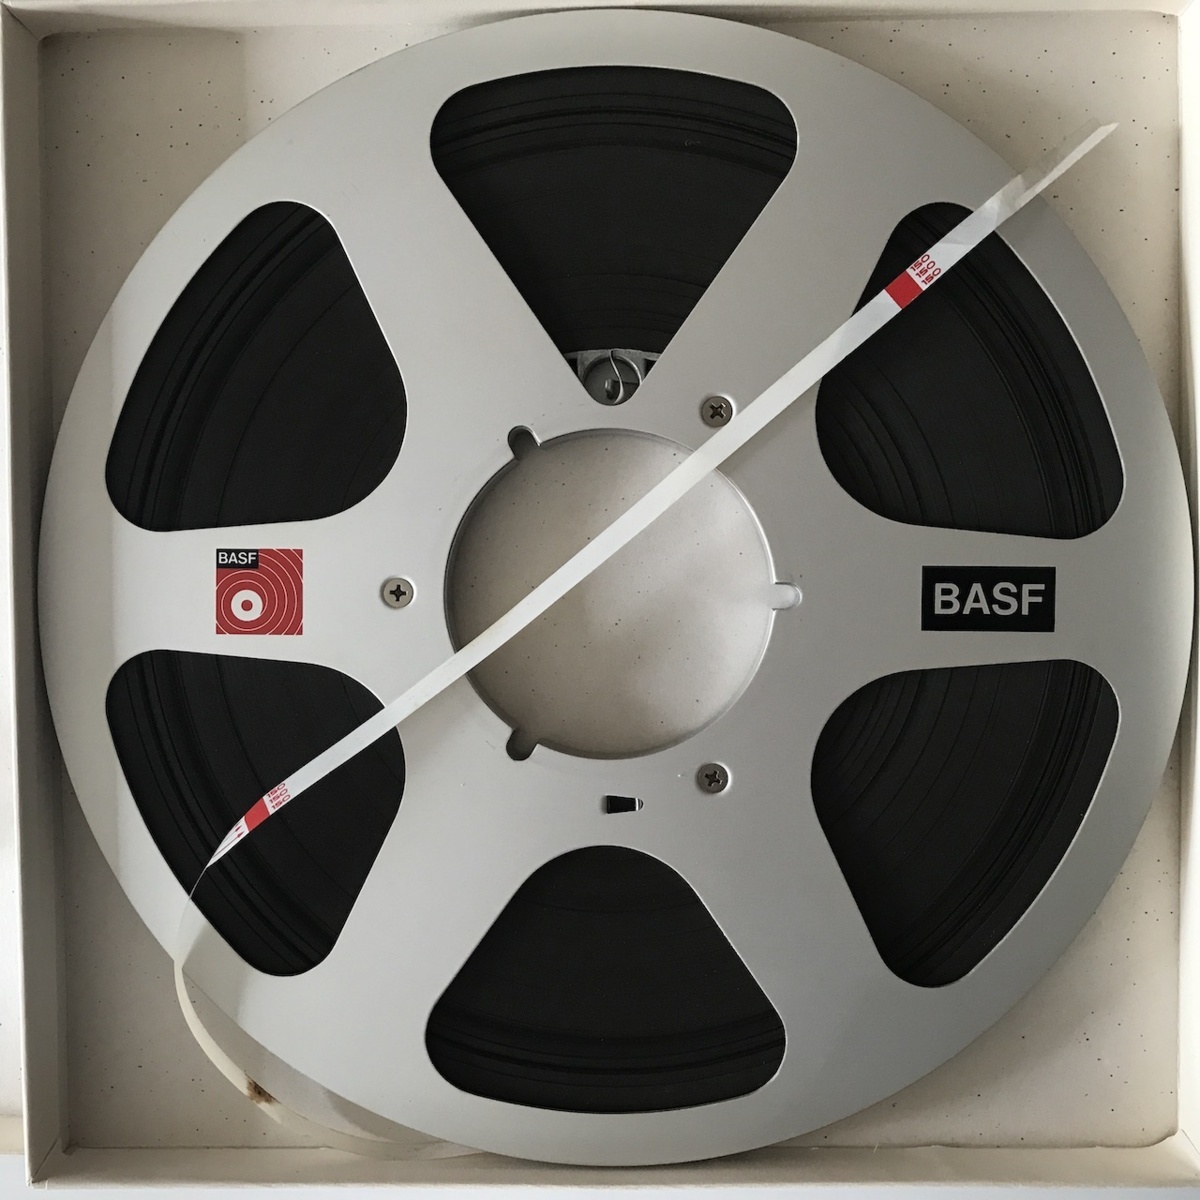 魅力的な価格 【ドイツ製】BASF プロフェッショナル オープンリールテープ 10号 - その他 - www.smithsfalls.ca